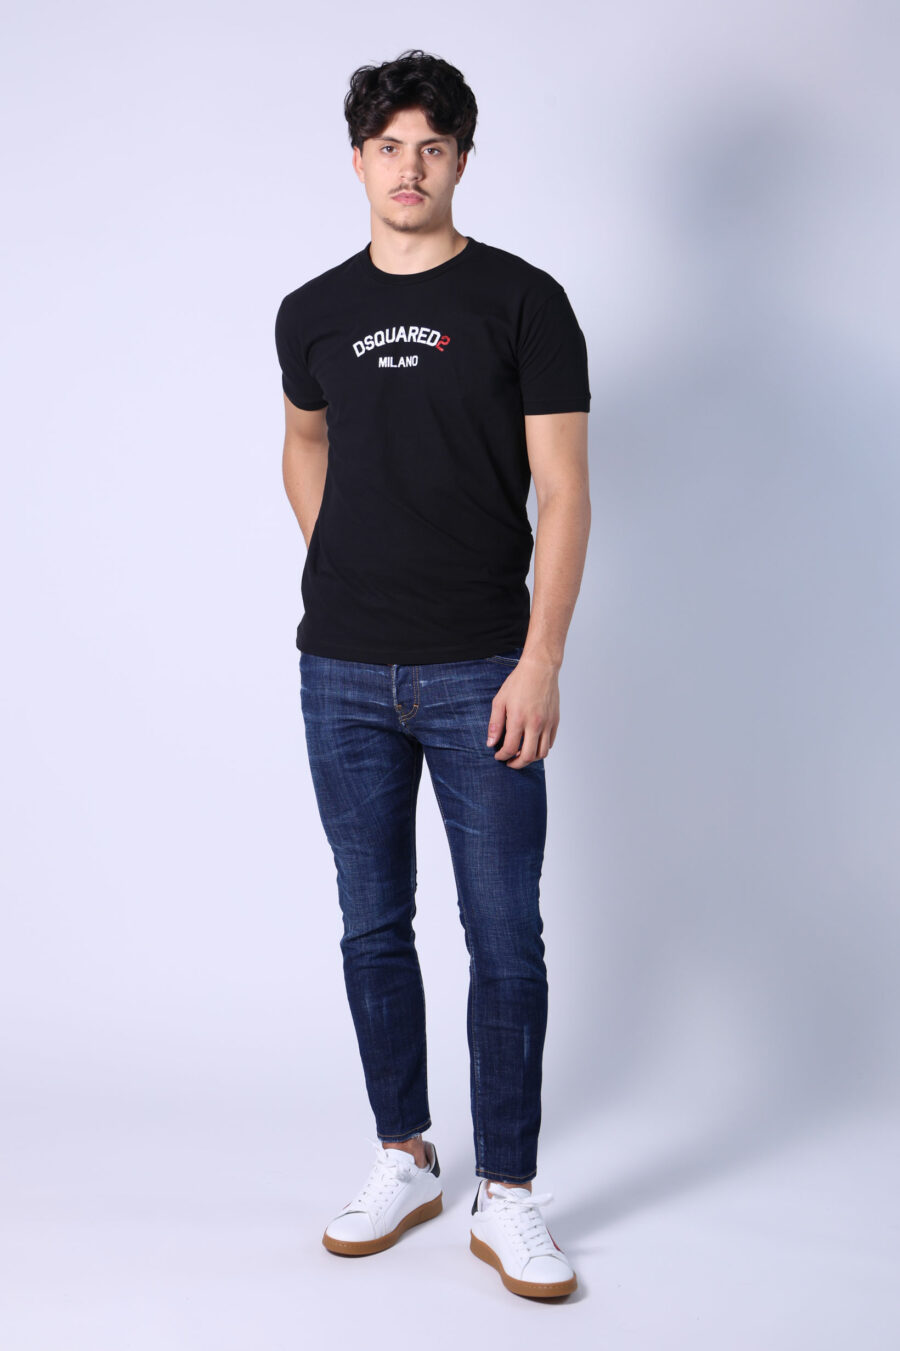 T-shirt noir avec minilogue "dsquared2 milano" - Untitled Catalog 05471